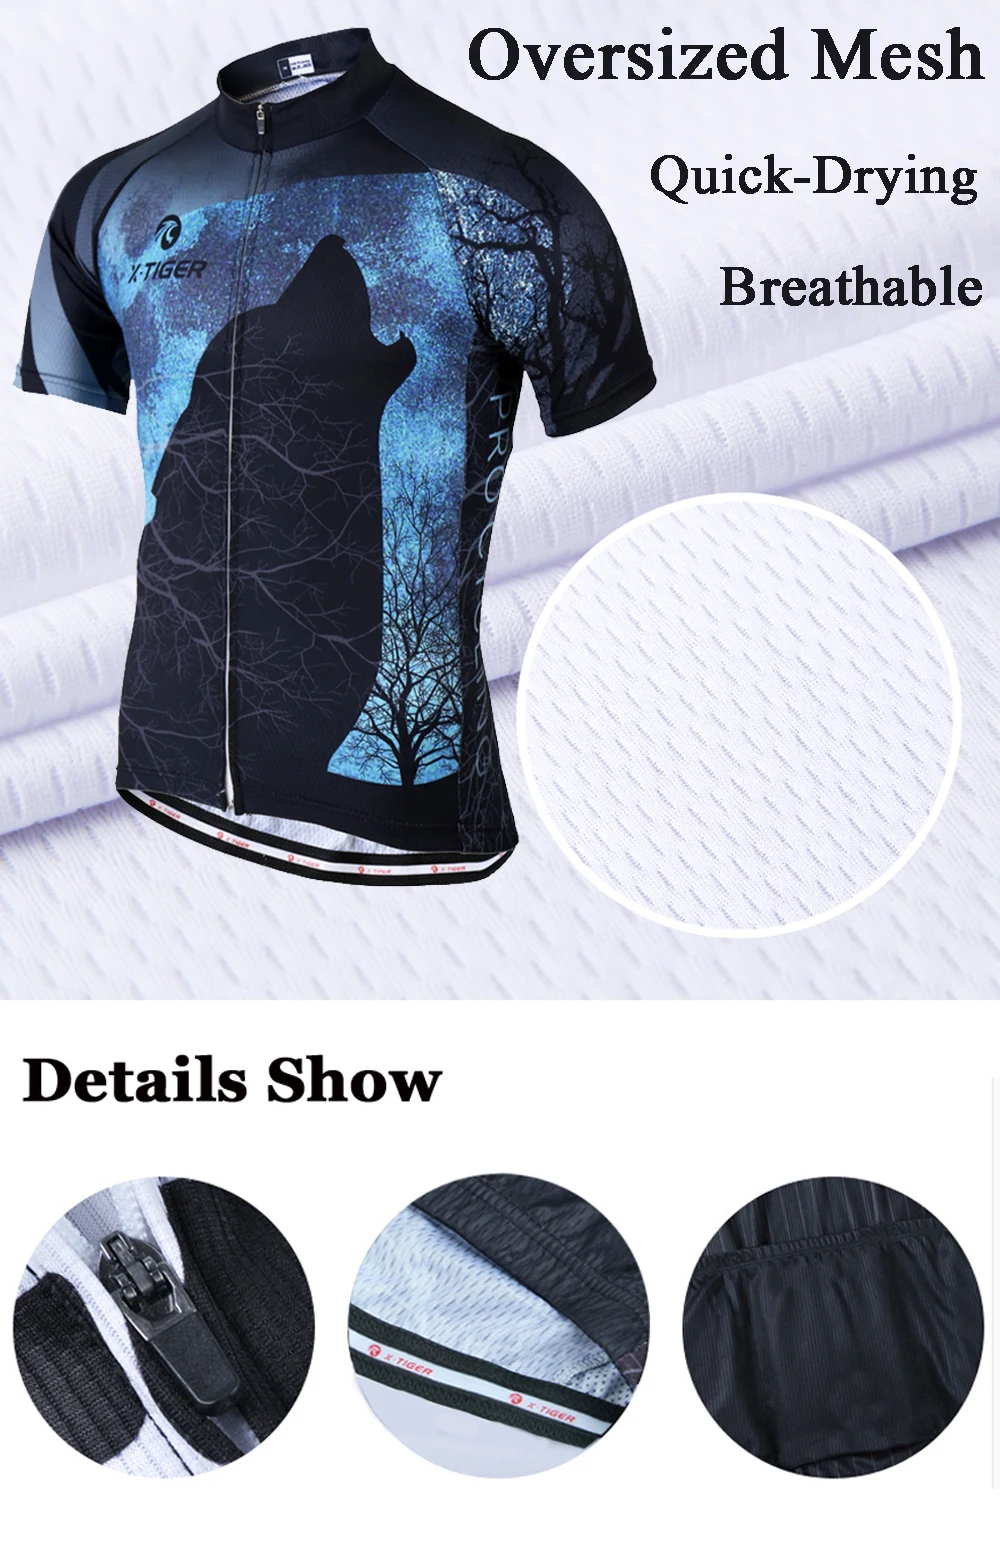 X-Tiger Pro летняя быстросохнущая одежда для велоспорта трикотажный комплект для велоспорта гоночная велосипедная одежда анти-УФ велосипедная одежда для мужчин